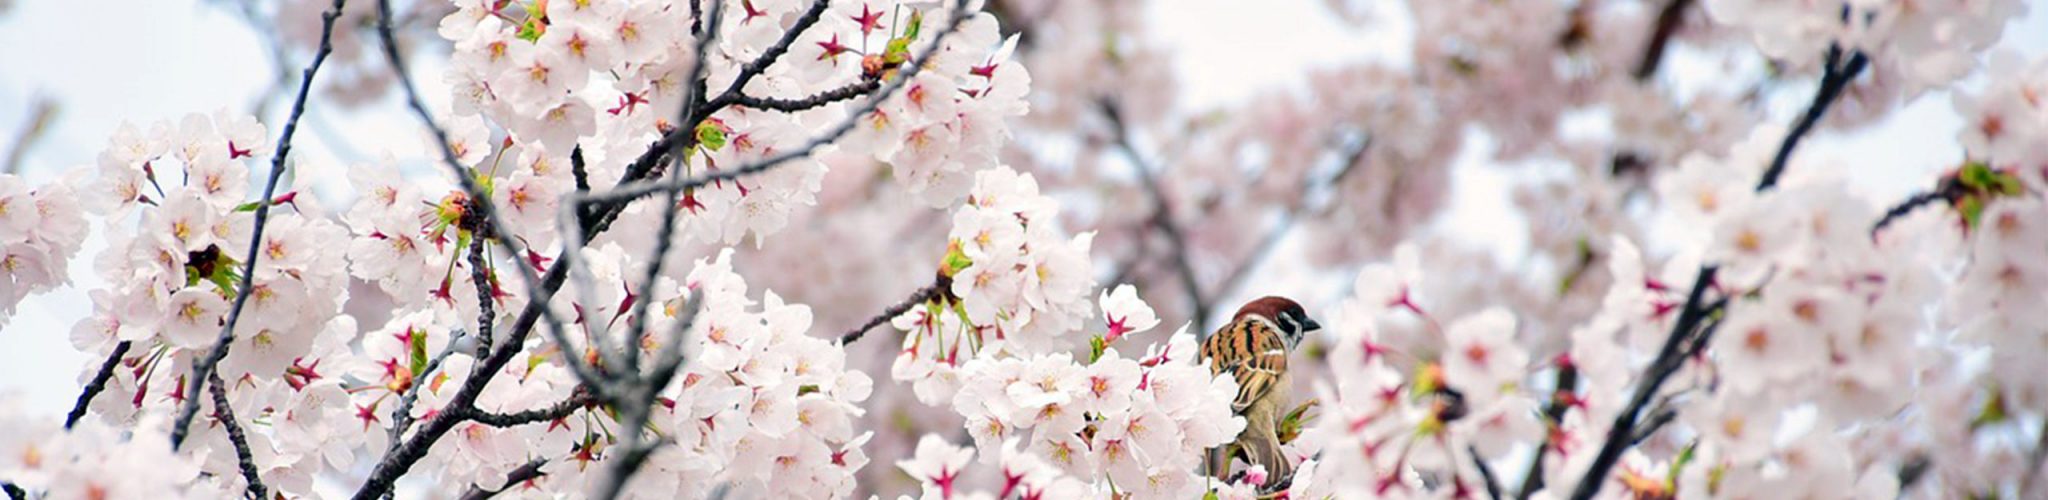 cherry blossom slide image